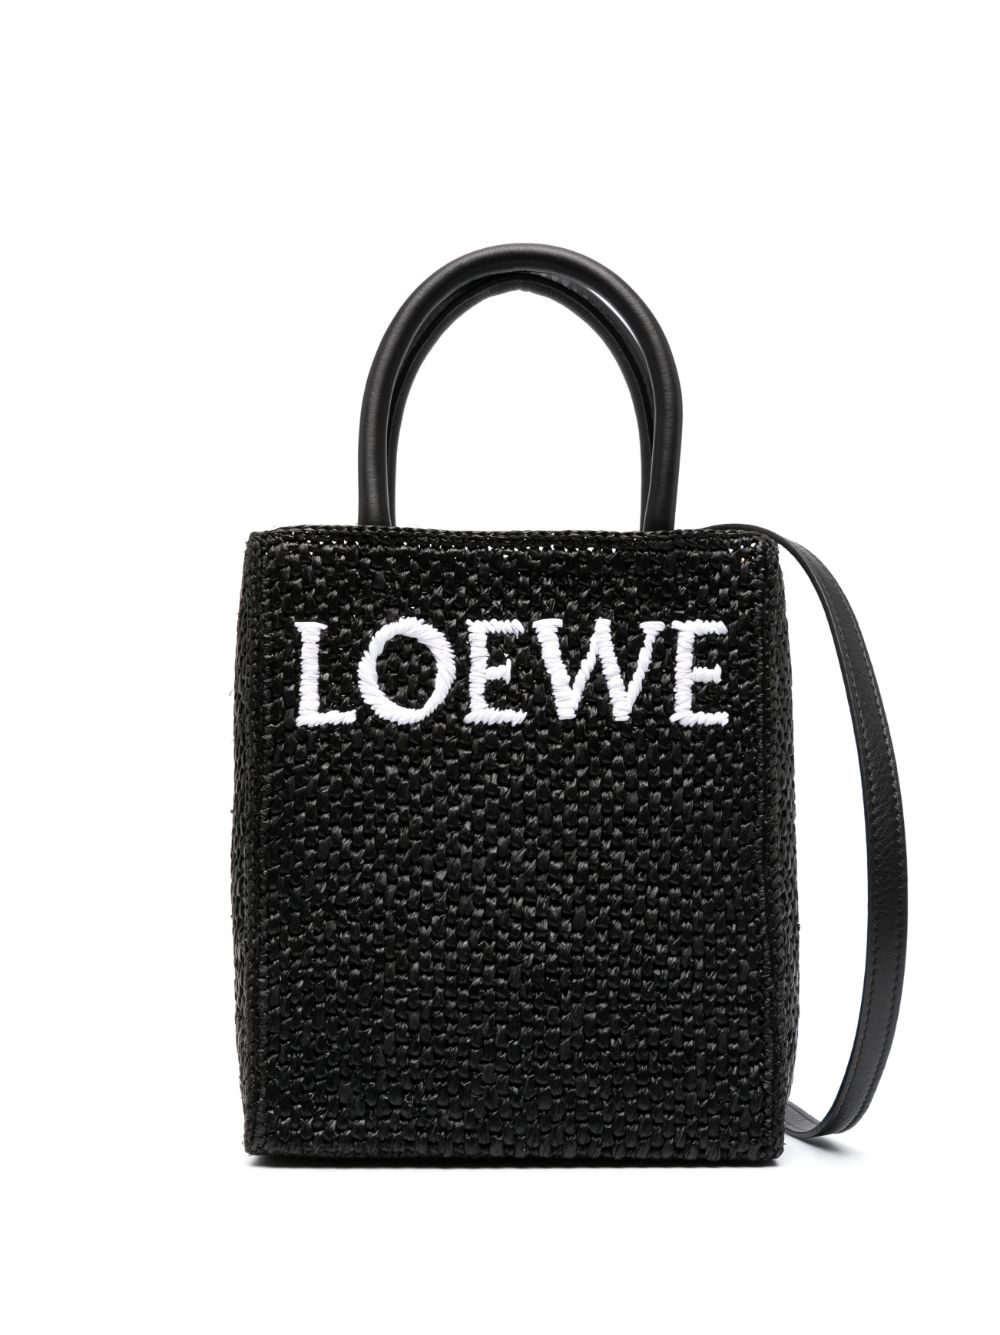 LOEWE- Standard A5 Raffia Tote Bag